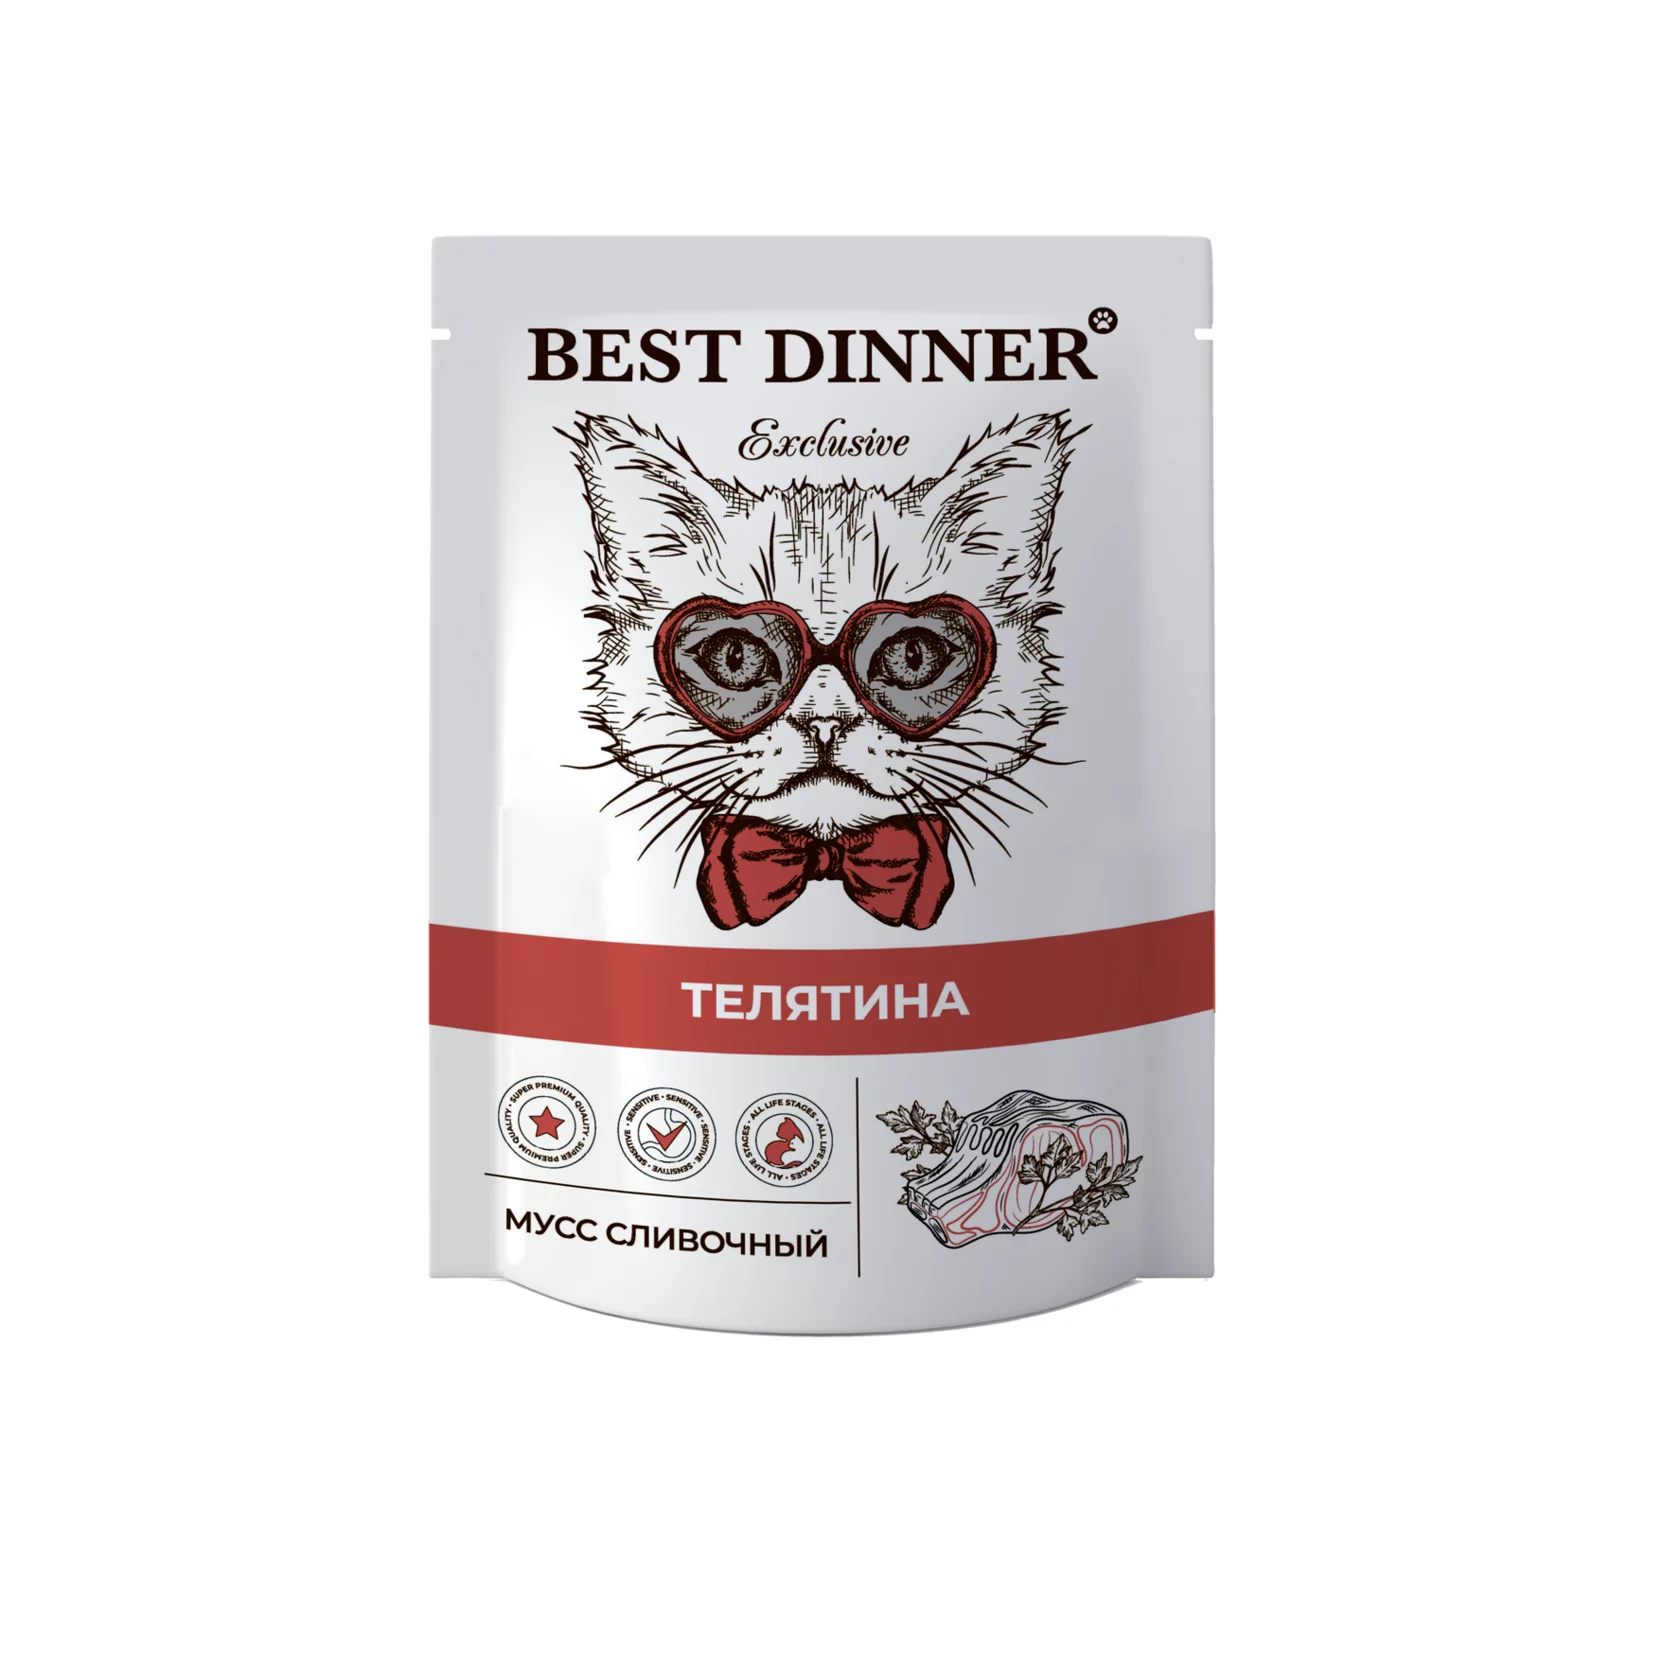 Пауч мусс сливочный для котят и взрослых кошек Best Dinner (Бест Диннер) Adult & Kitten, телятина, 85 г